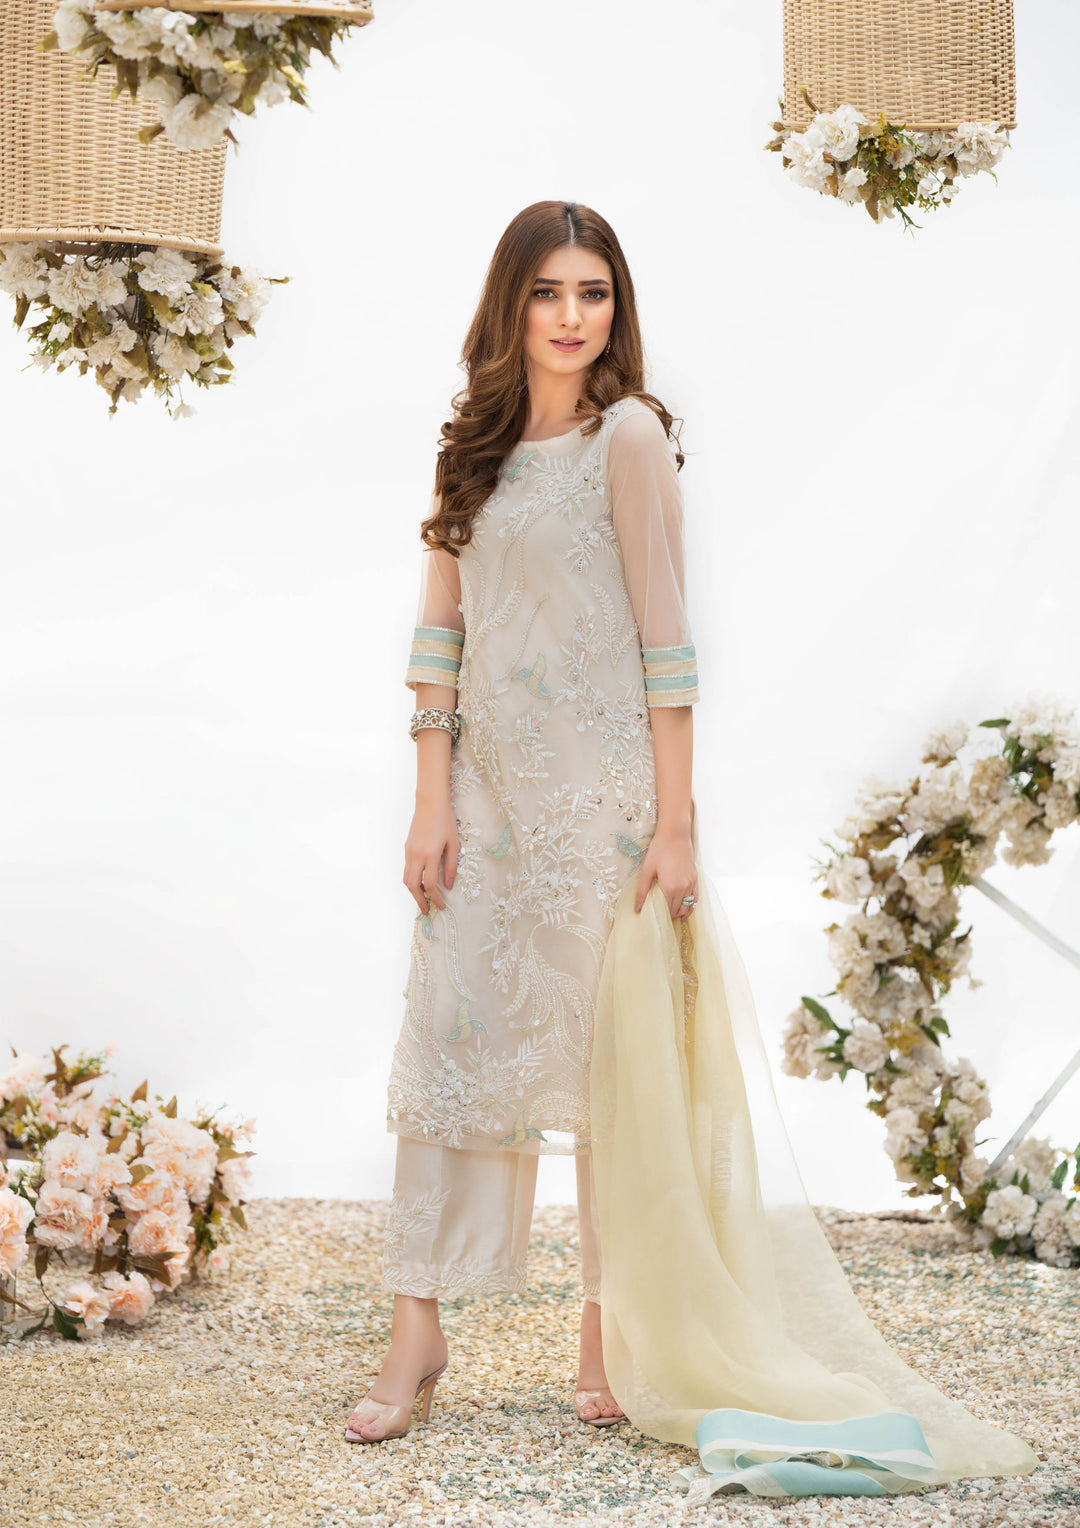 Off-white dress-pakistani wedding